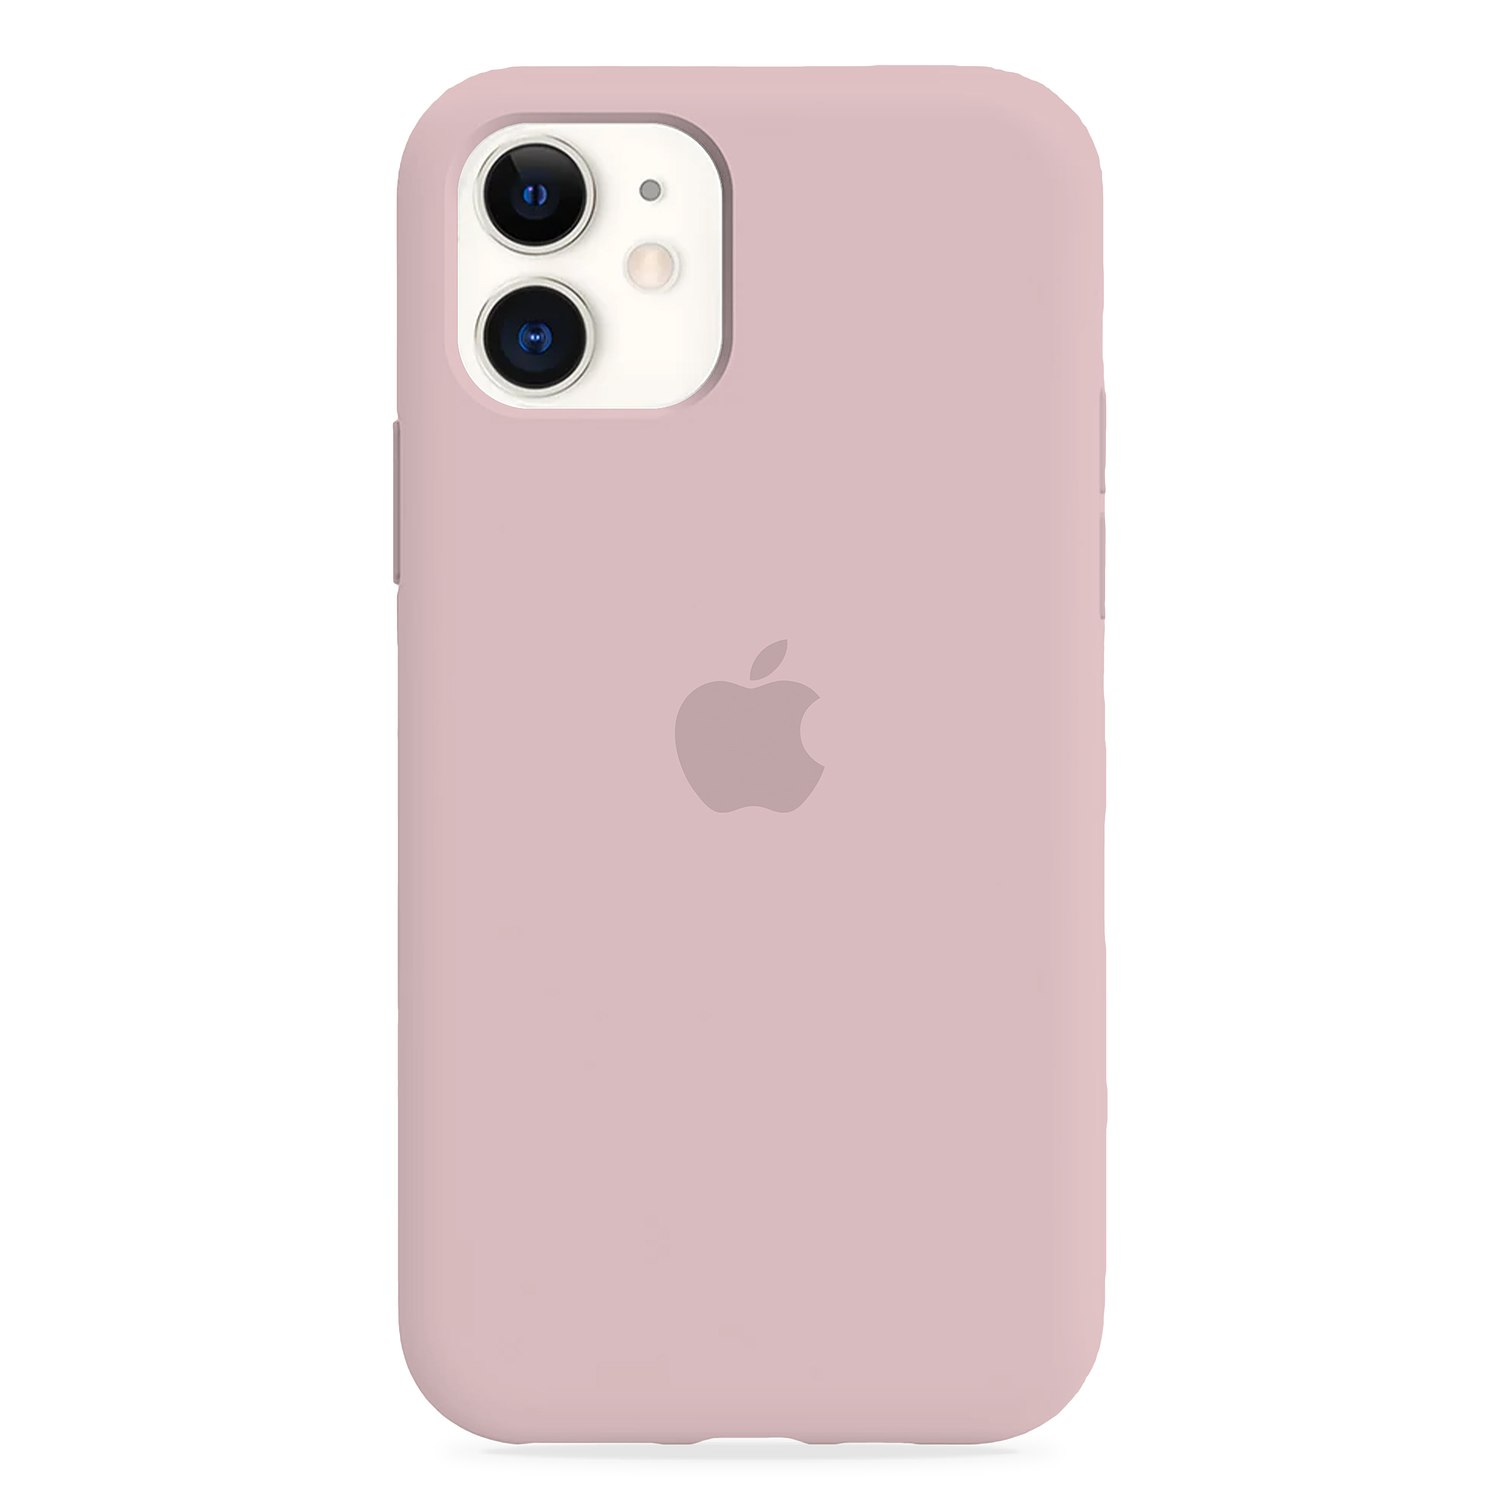 Carcasa de Silicona - iPhone 11 (Colores)